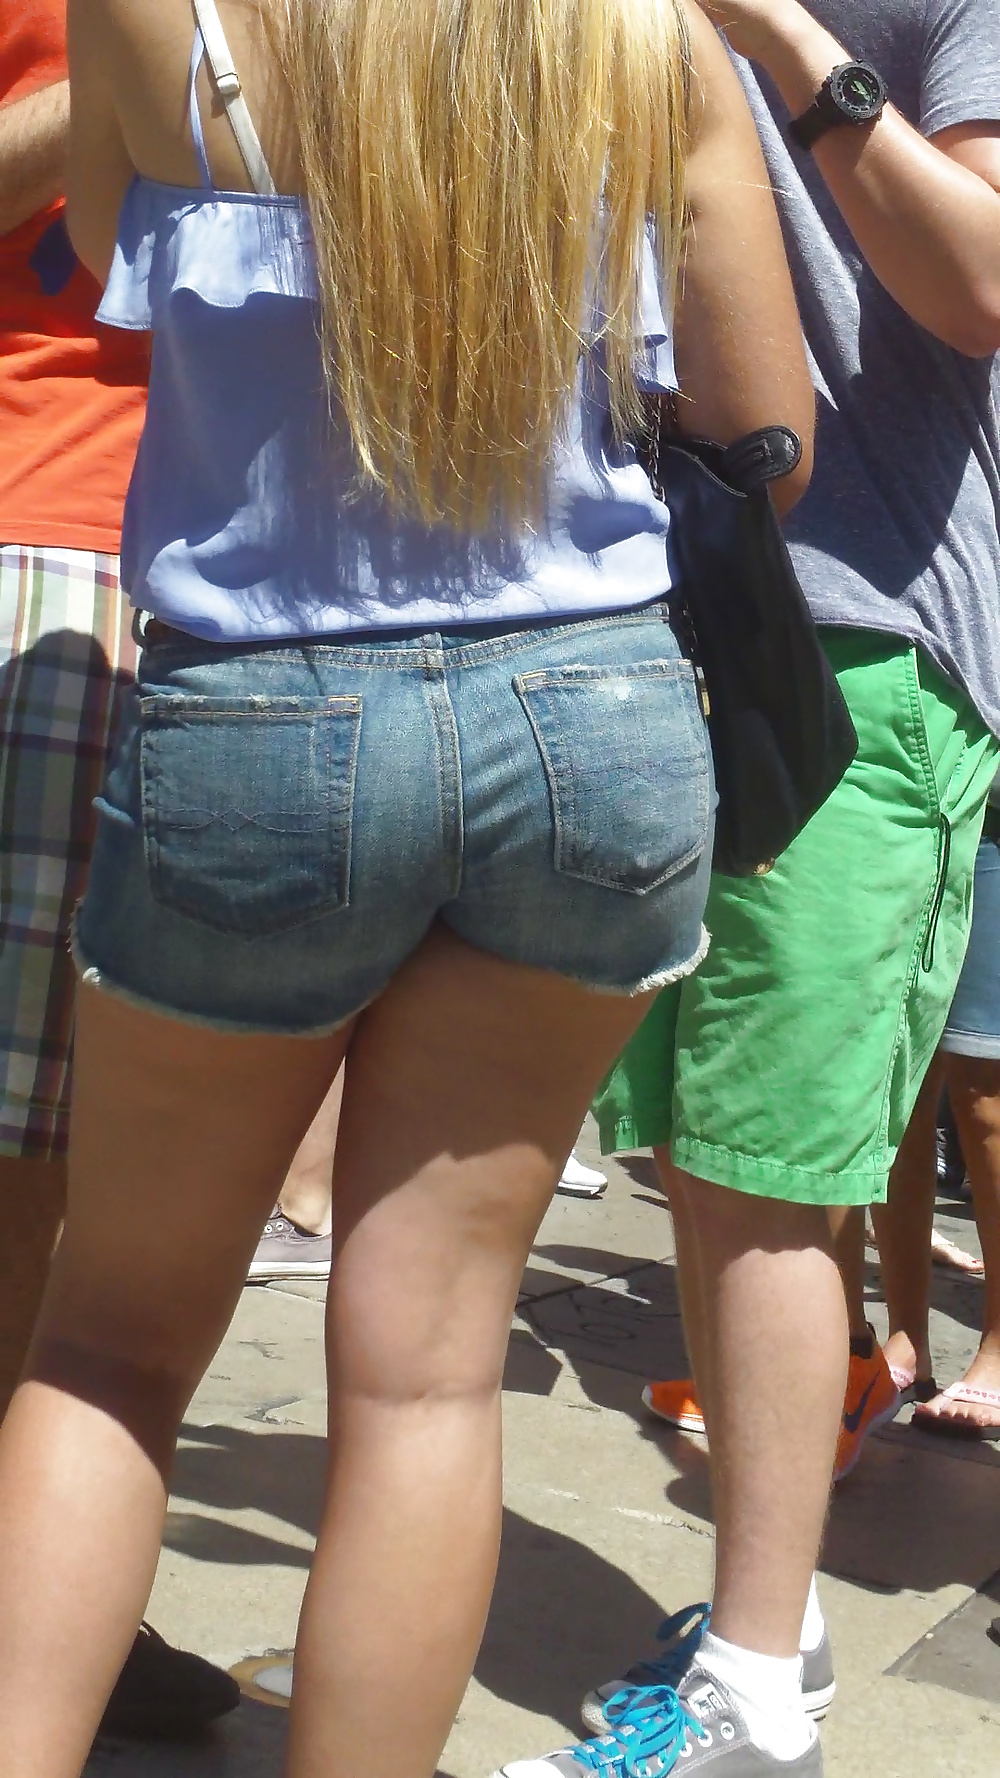 Popular teen girls ass & butt in jeans Part 5 #28733683